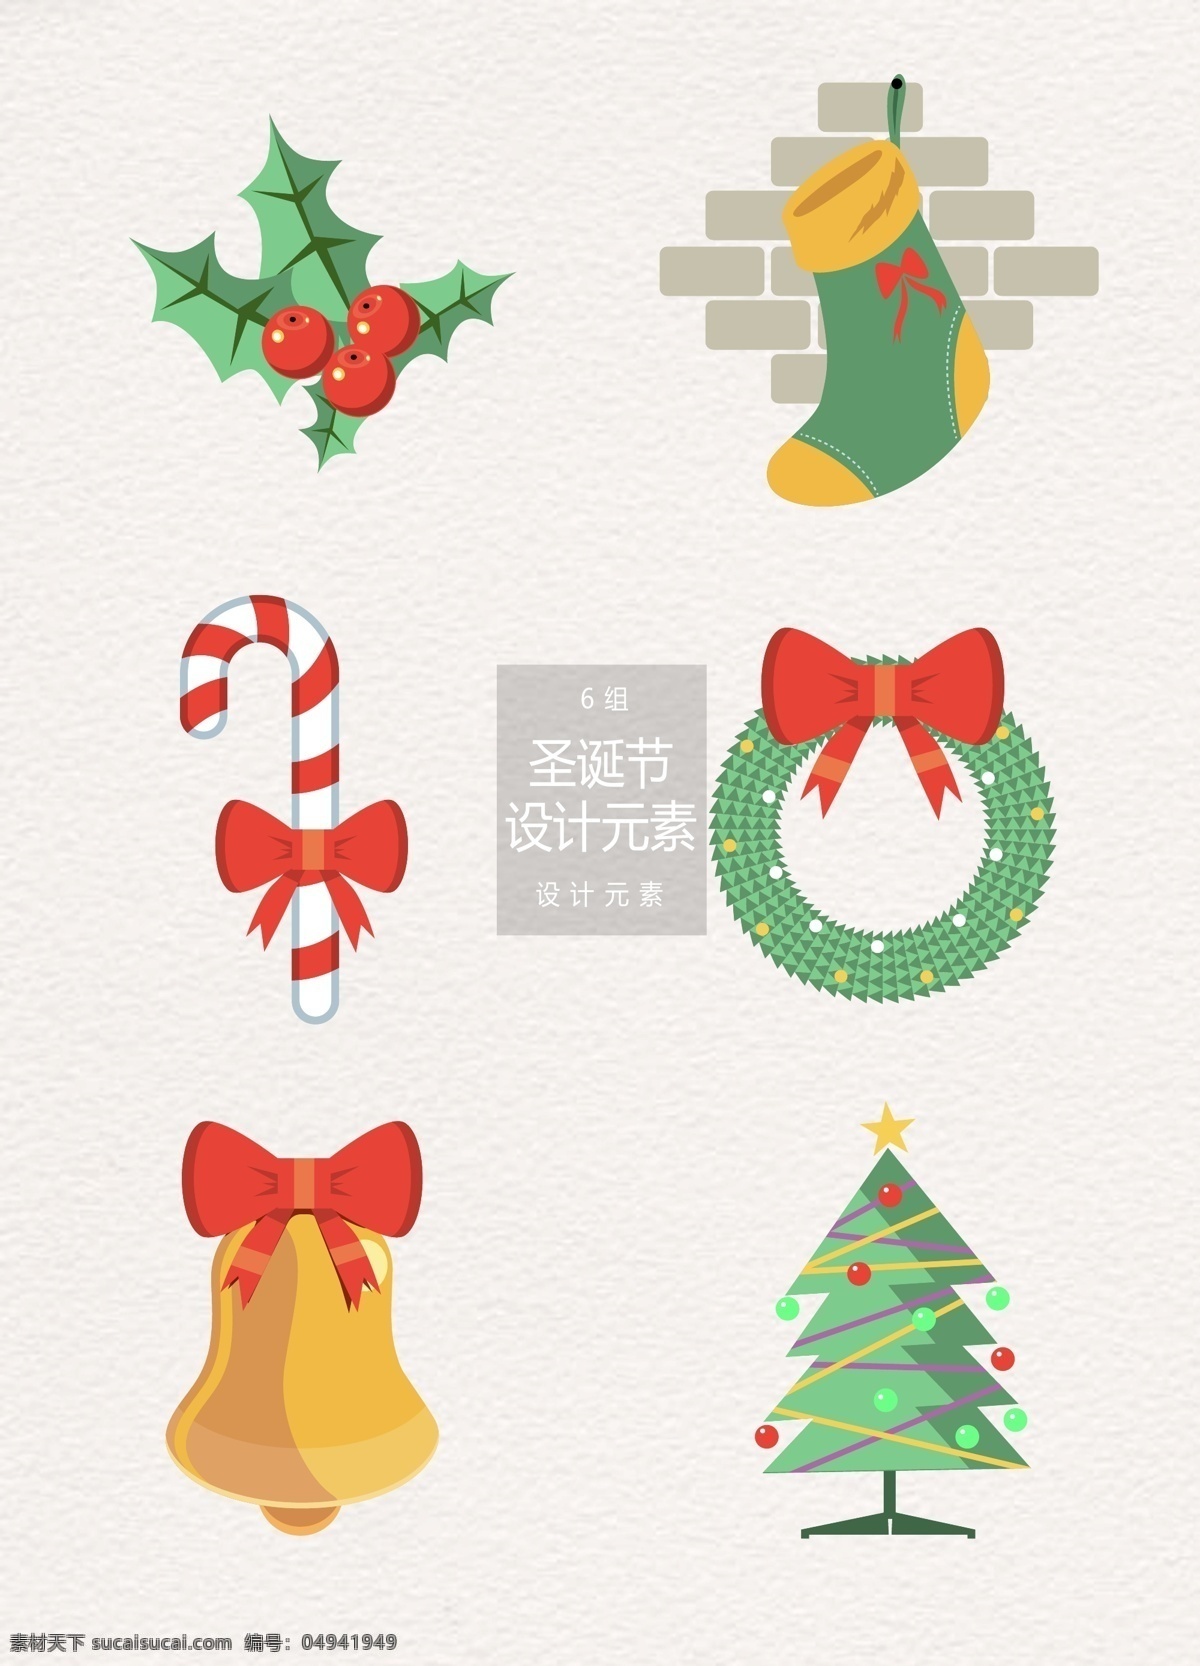 圣诞节 节日 装饰设计 元素 设计元素 圣诞树 袜子 铃铛 圣诞 圣诞元素 糖果 圣诞花环 圣诞袜